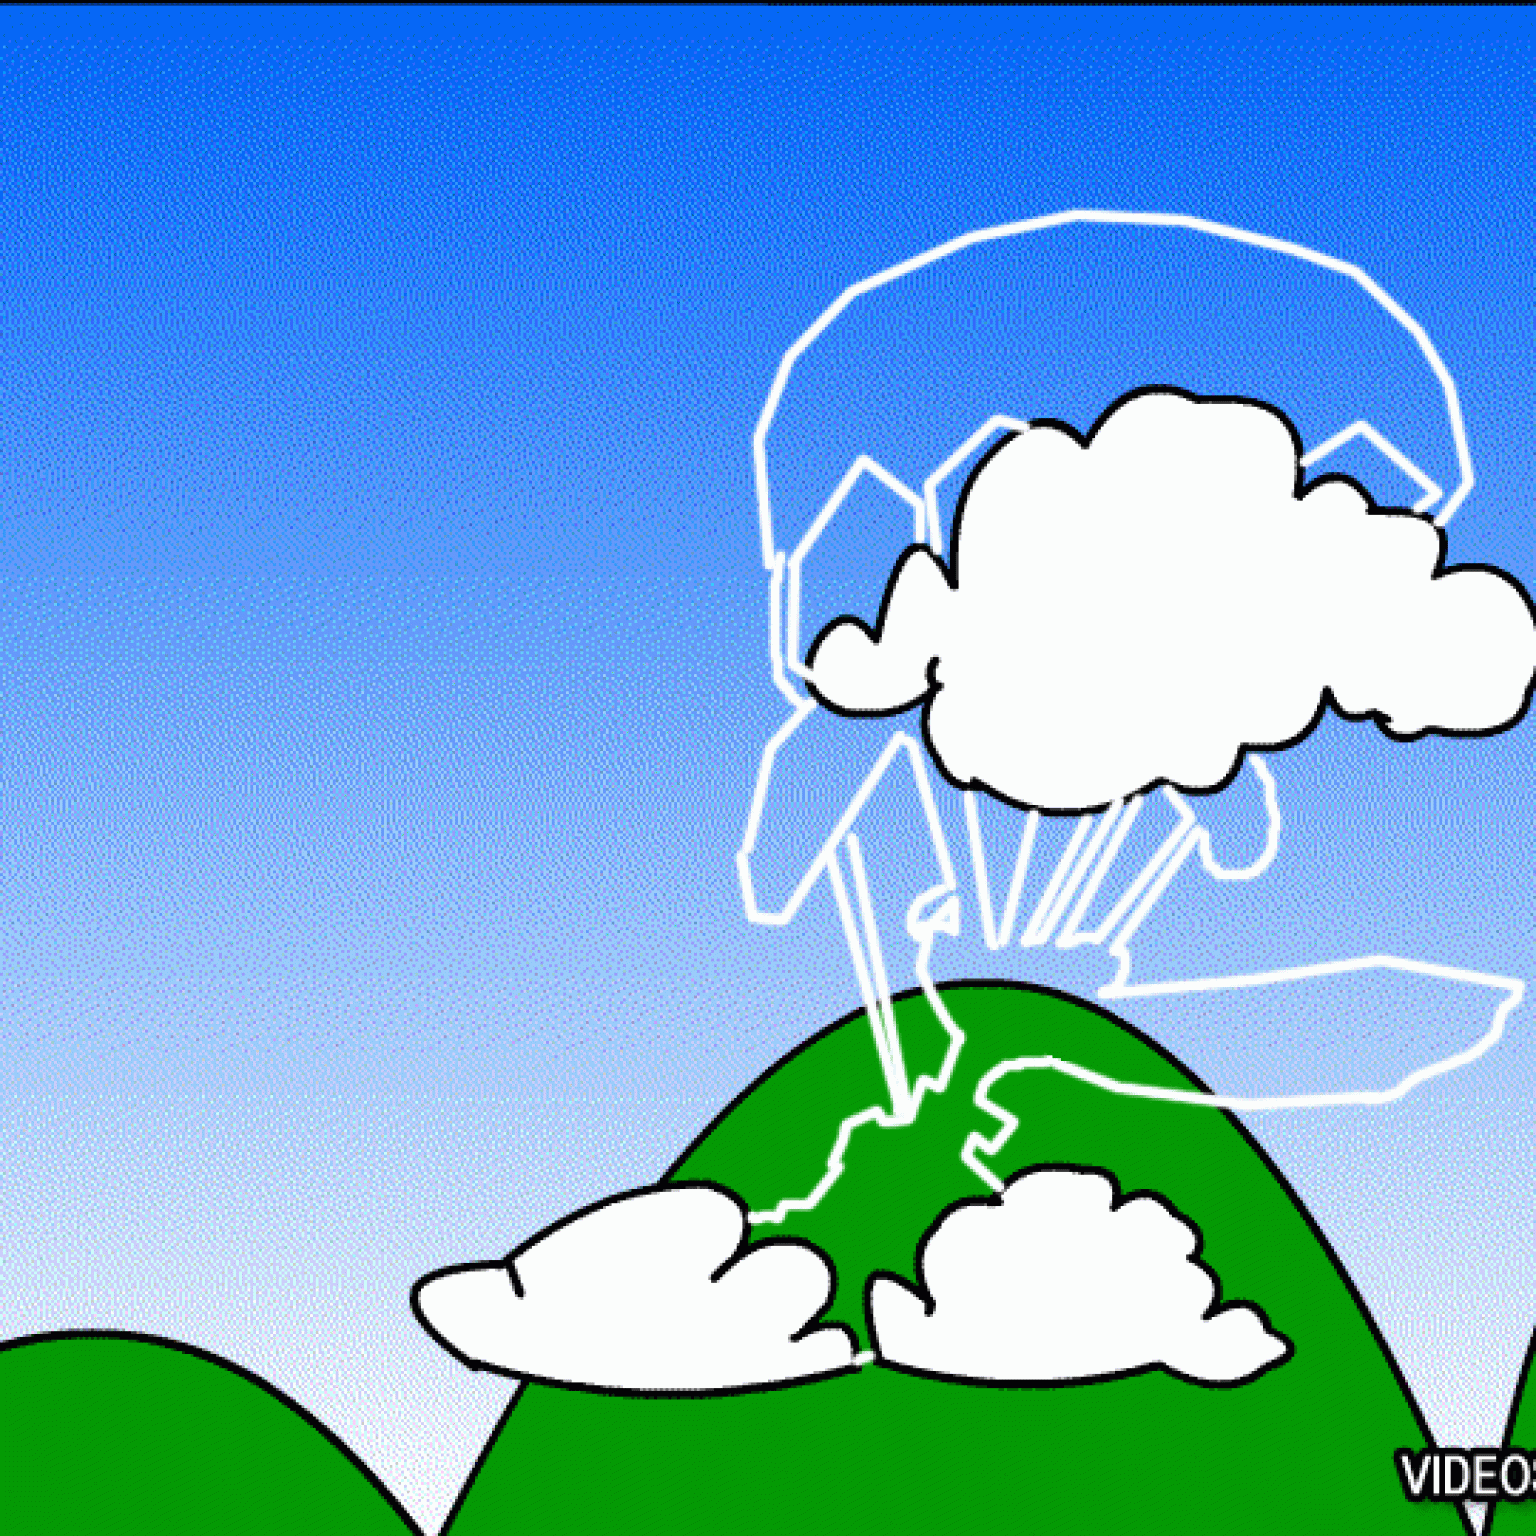 Atrapa al Perro en Paracaídas detrás de las Nuves